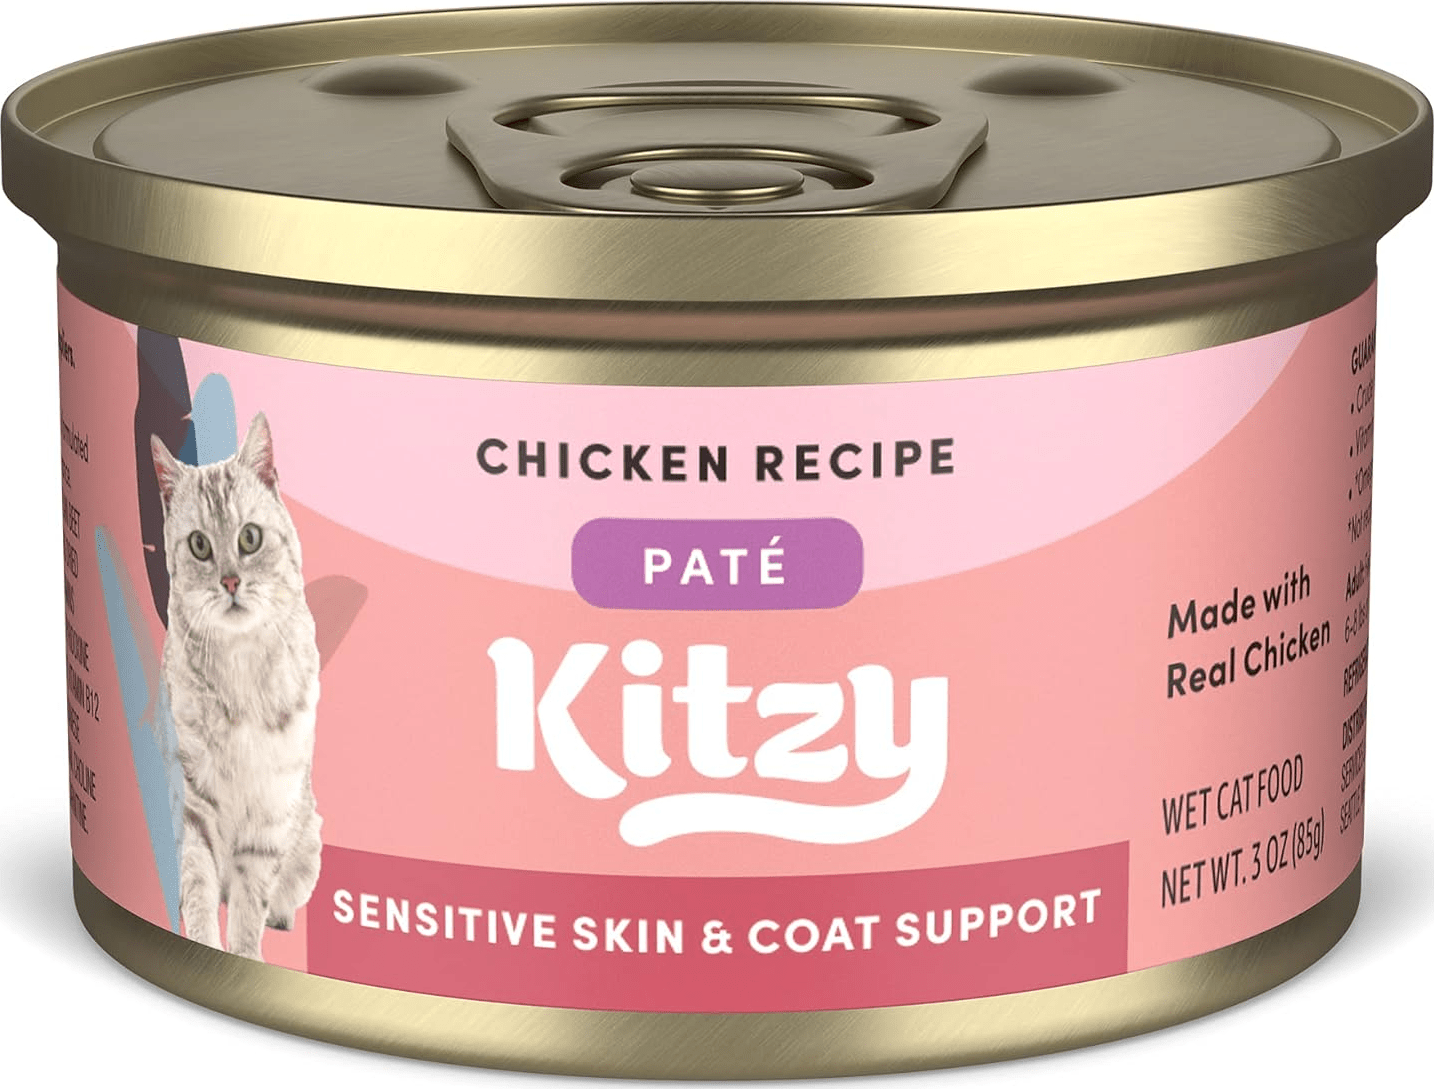 Kitzy Sensitive Skin & Coat Chicken Pate